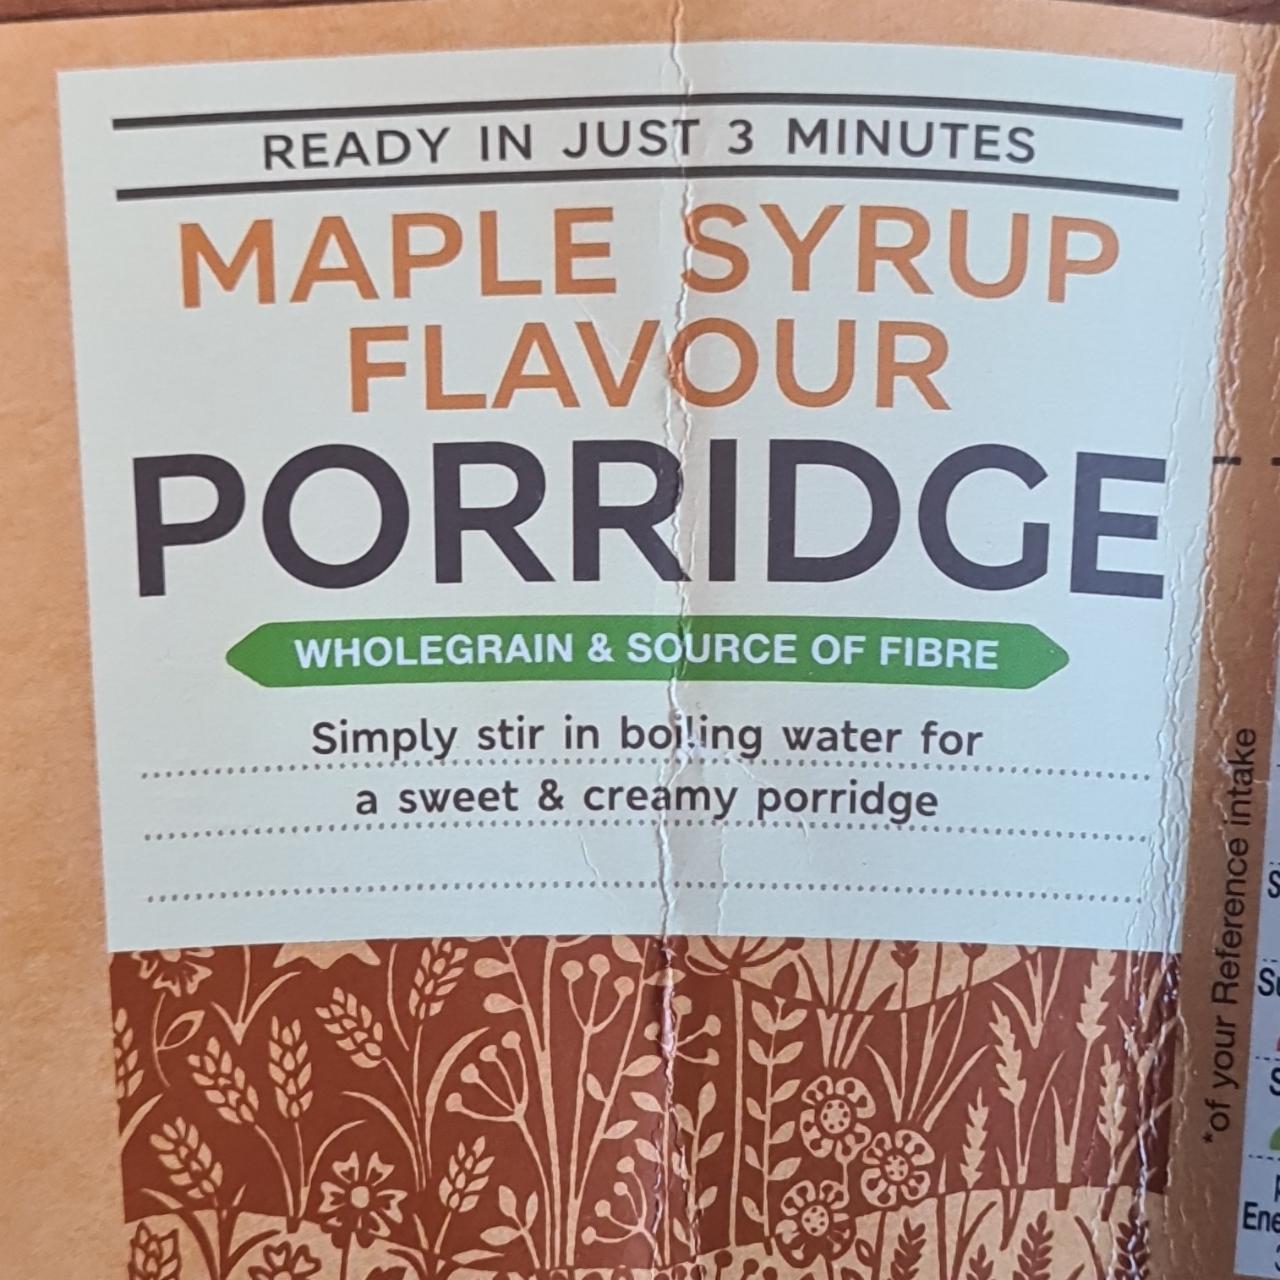 Képek - Maple syrup flavour porridge Marks & Spencer